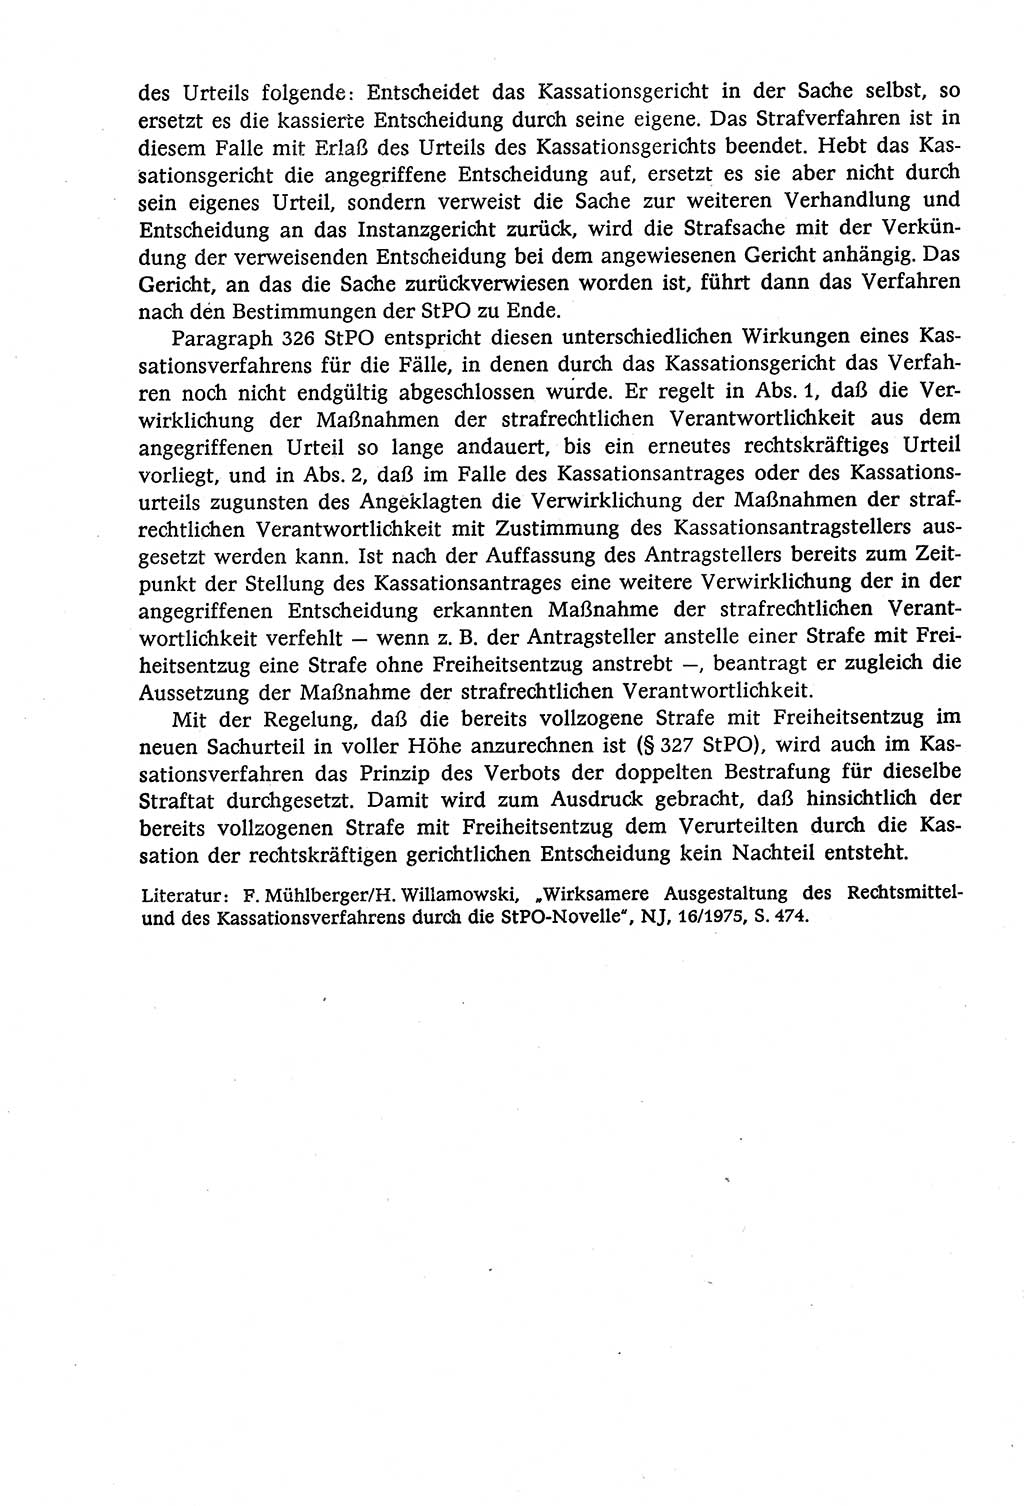 Strafverfahrensrecht [Deutsche Demokratische Republik (DDR)], Lehrbuch 1977, Seite 476 (Strafverf.-R. DDR Lb. 1977, S. 476)